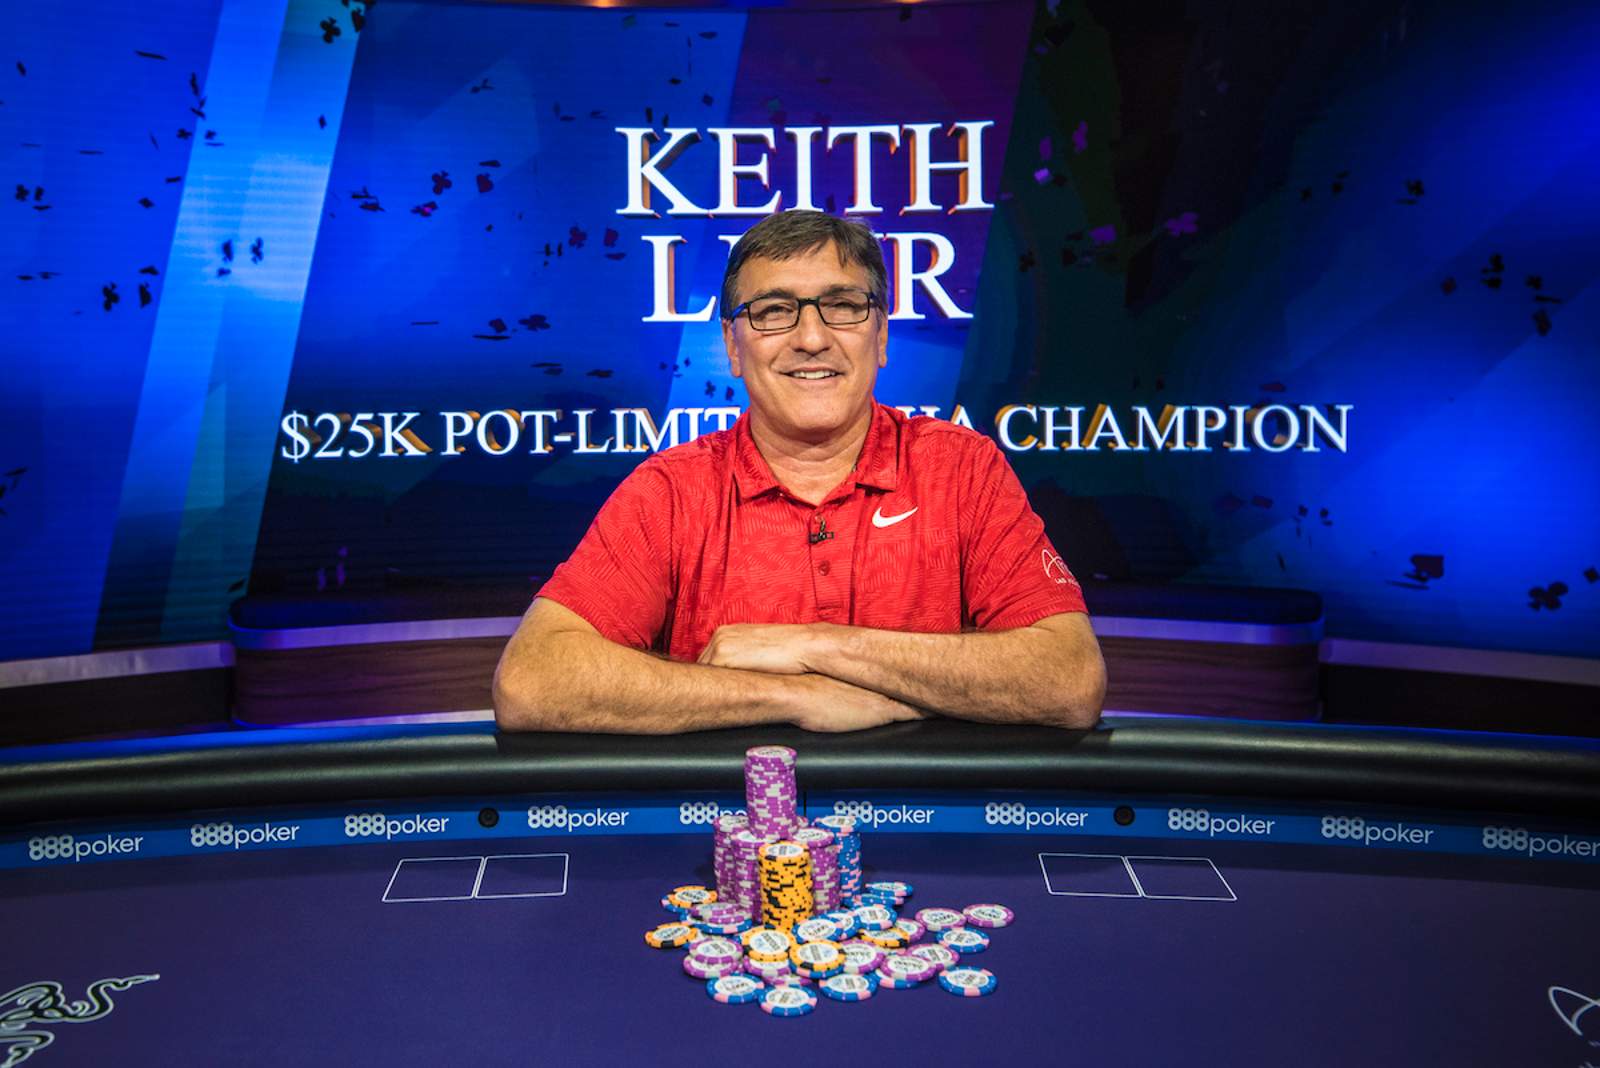 Keith Lehr Picks Up $25,000 Pot Limit Omaha Title on PokerGO